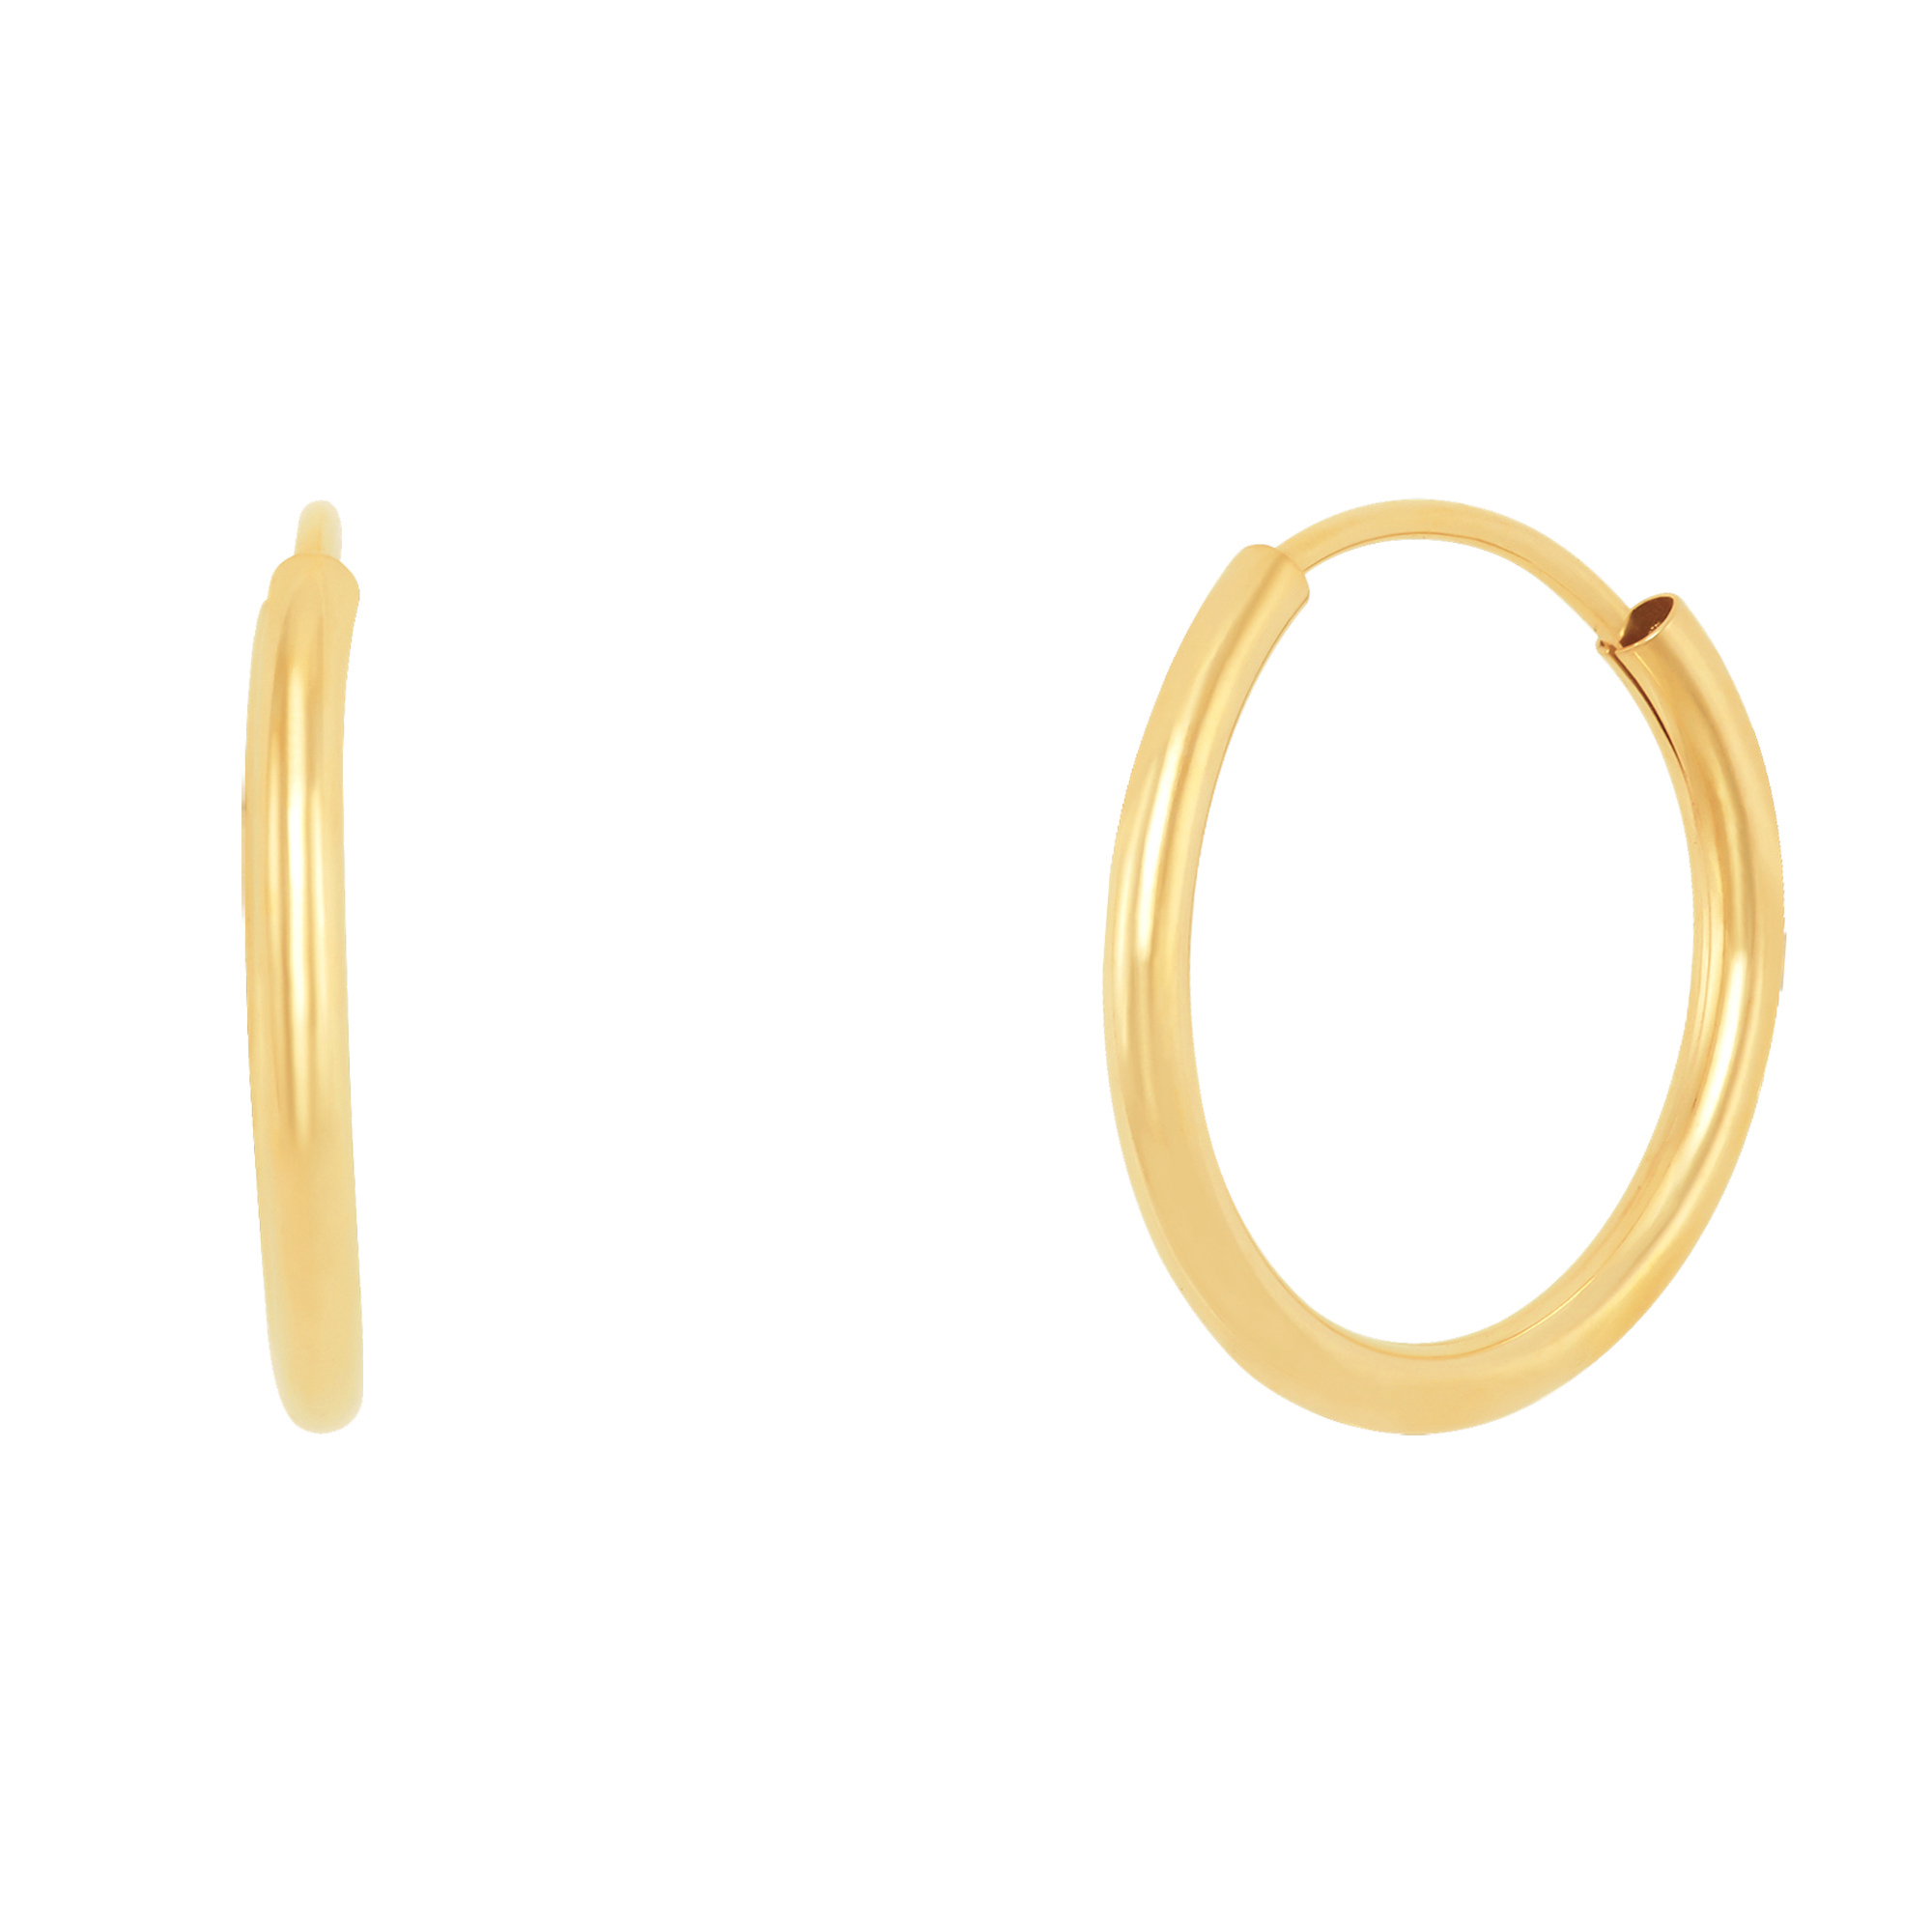 Endless Hoop Earrings in 14K Yellow Gold